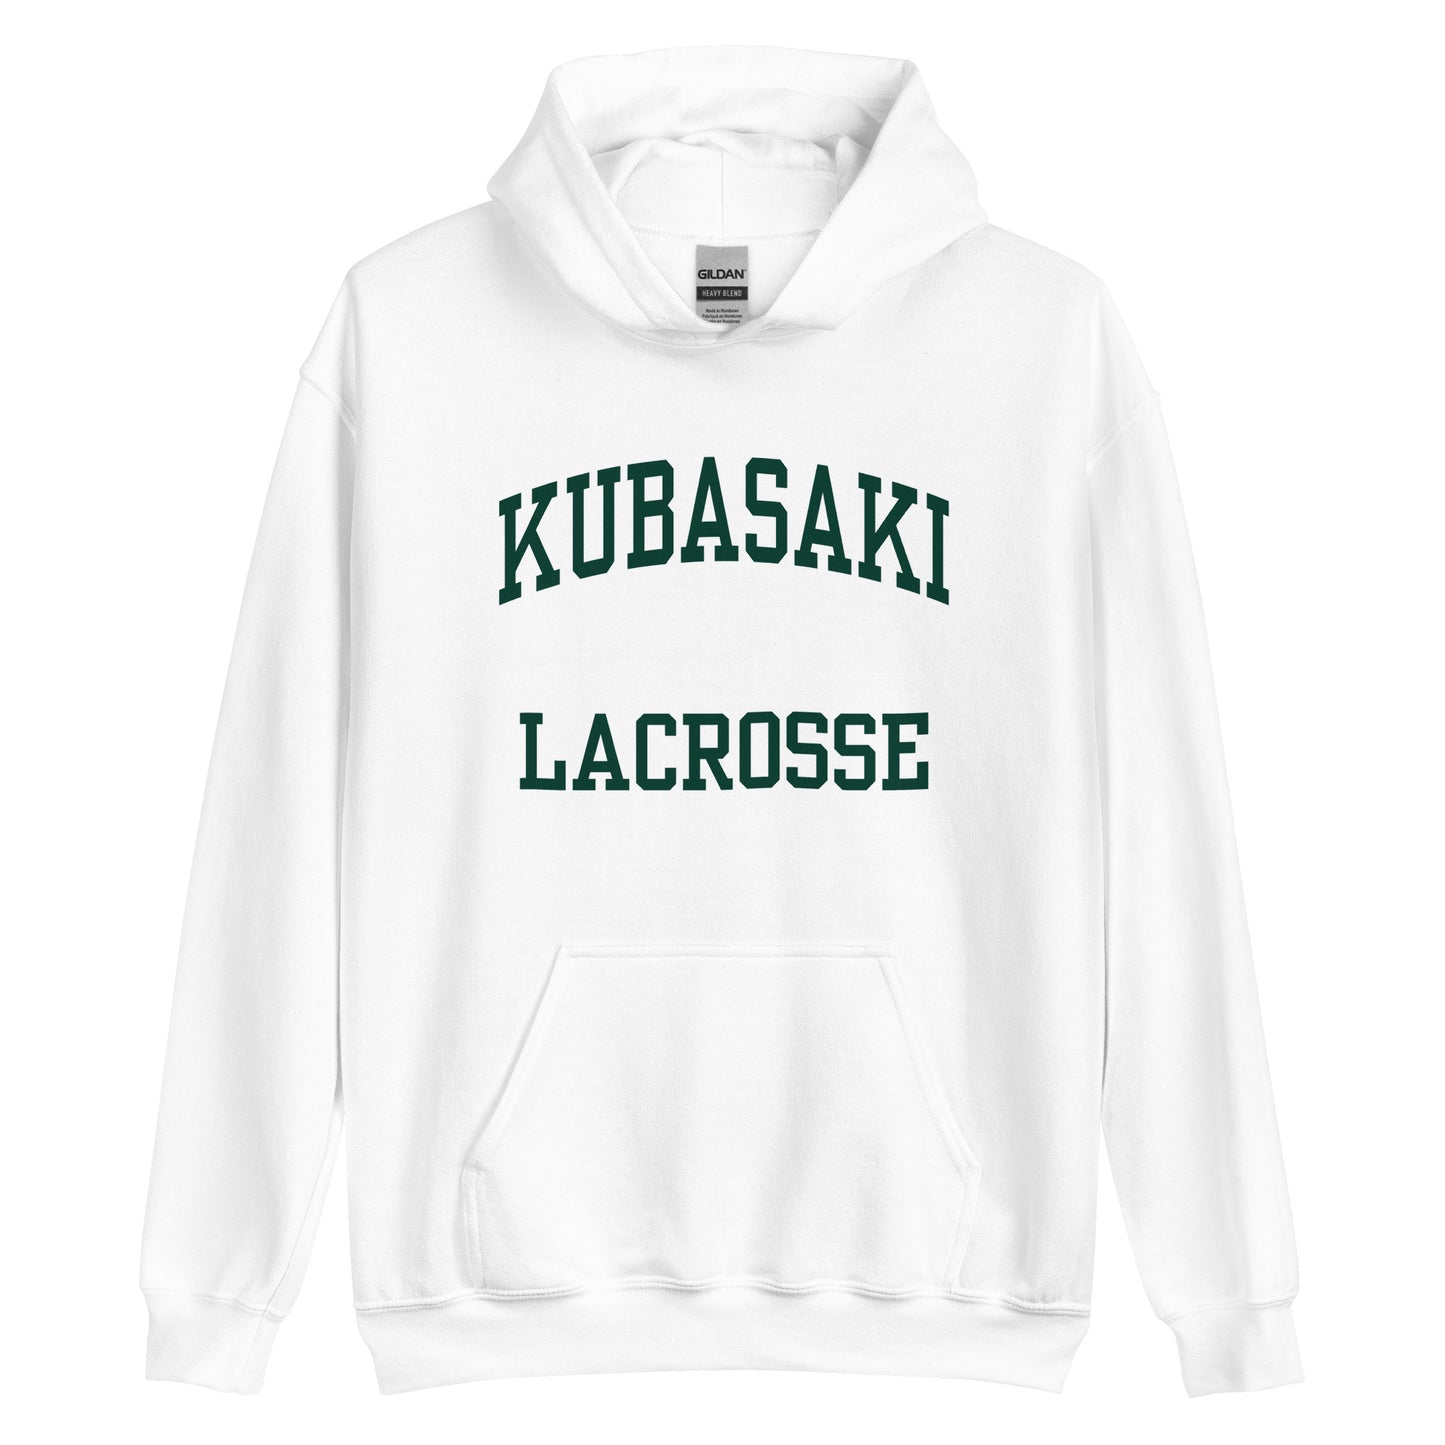 Kubasaki High School Lacrosse Unisex Hoodie